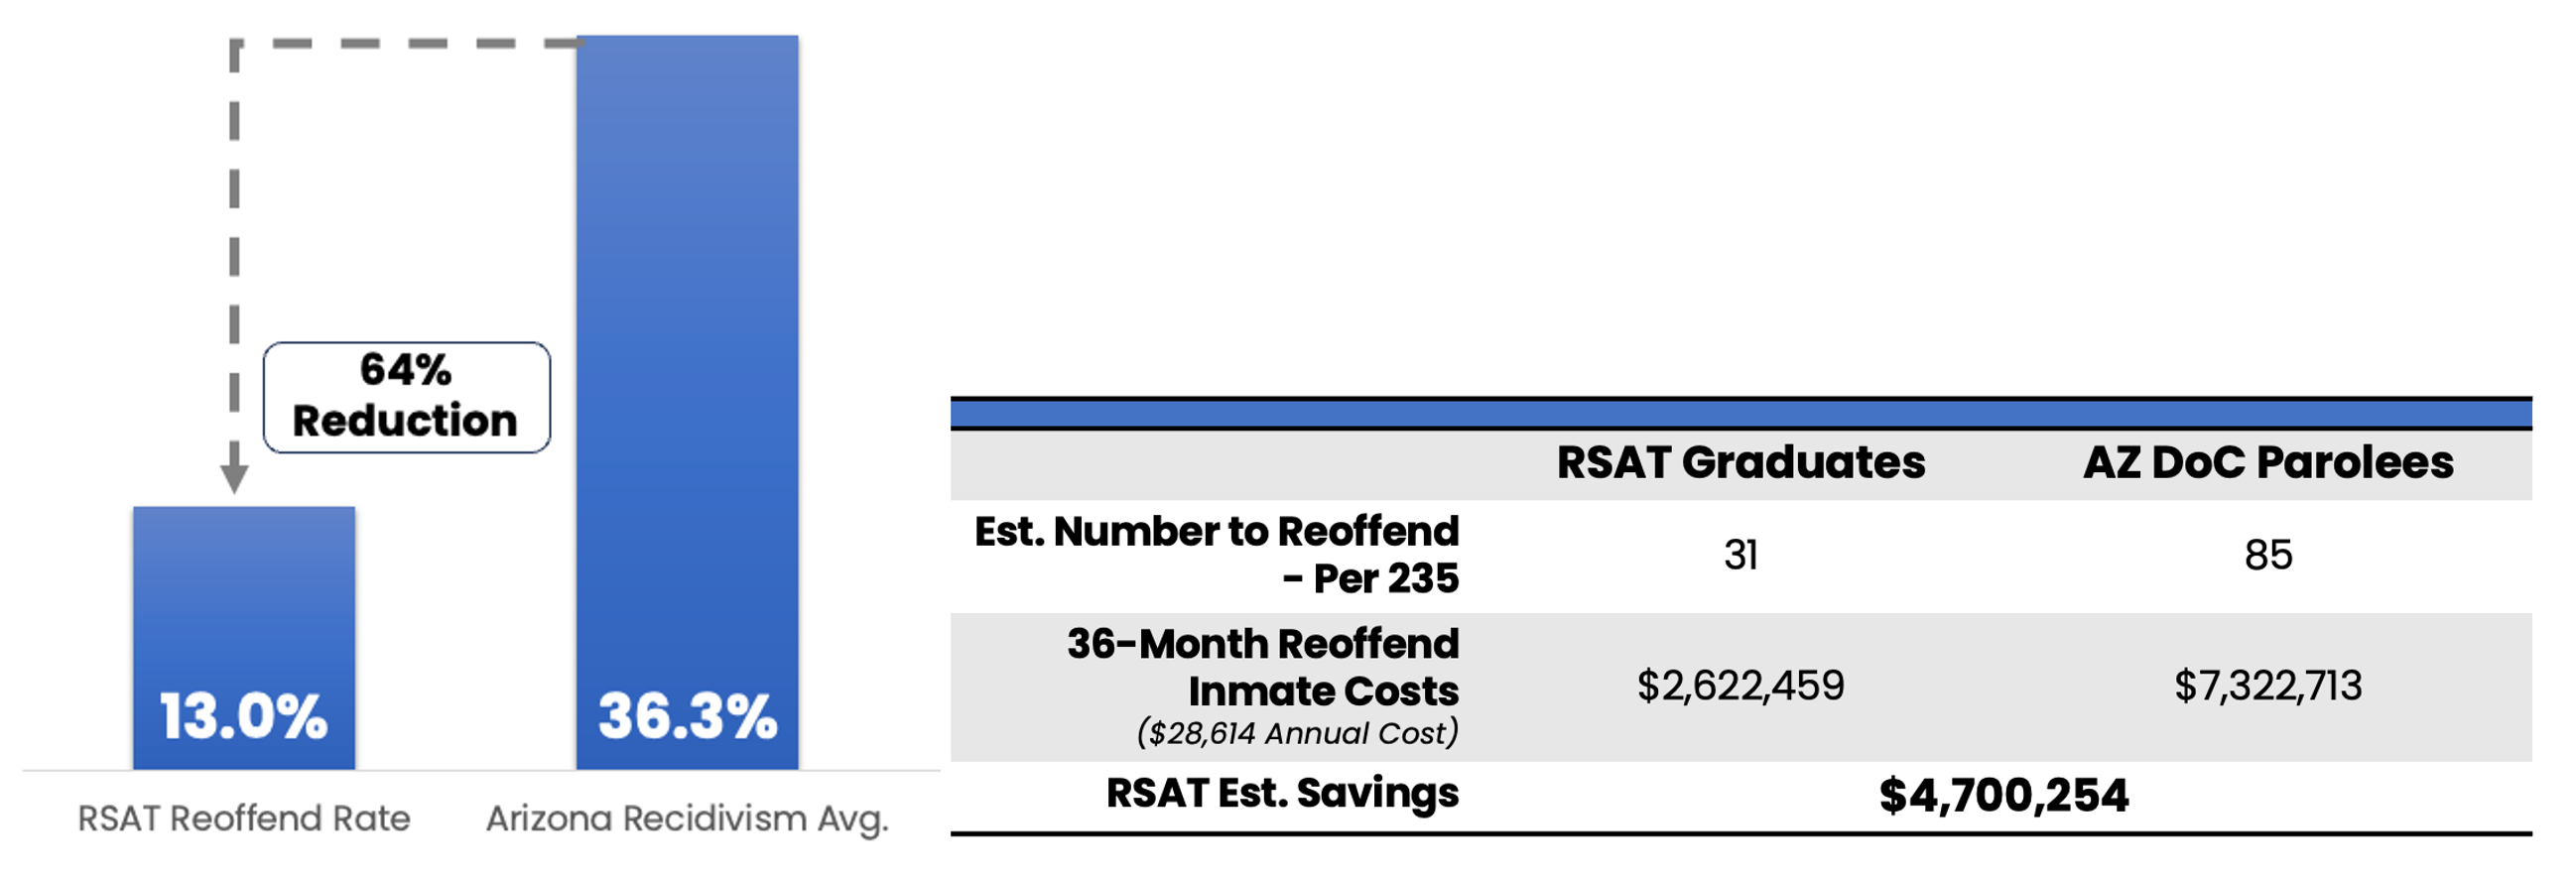 Figure: Cost-Effectiveness of RSAT Program